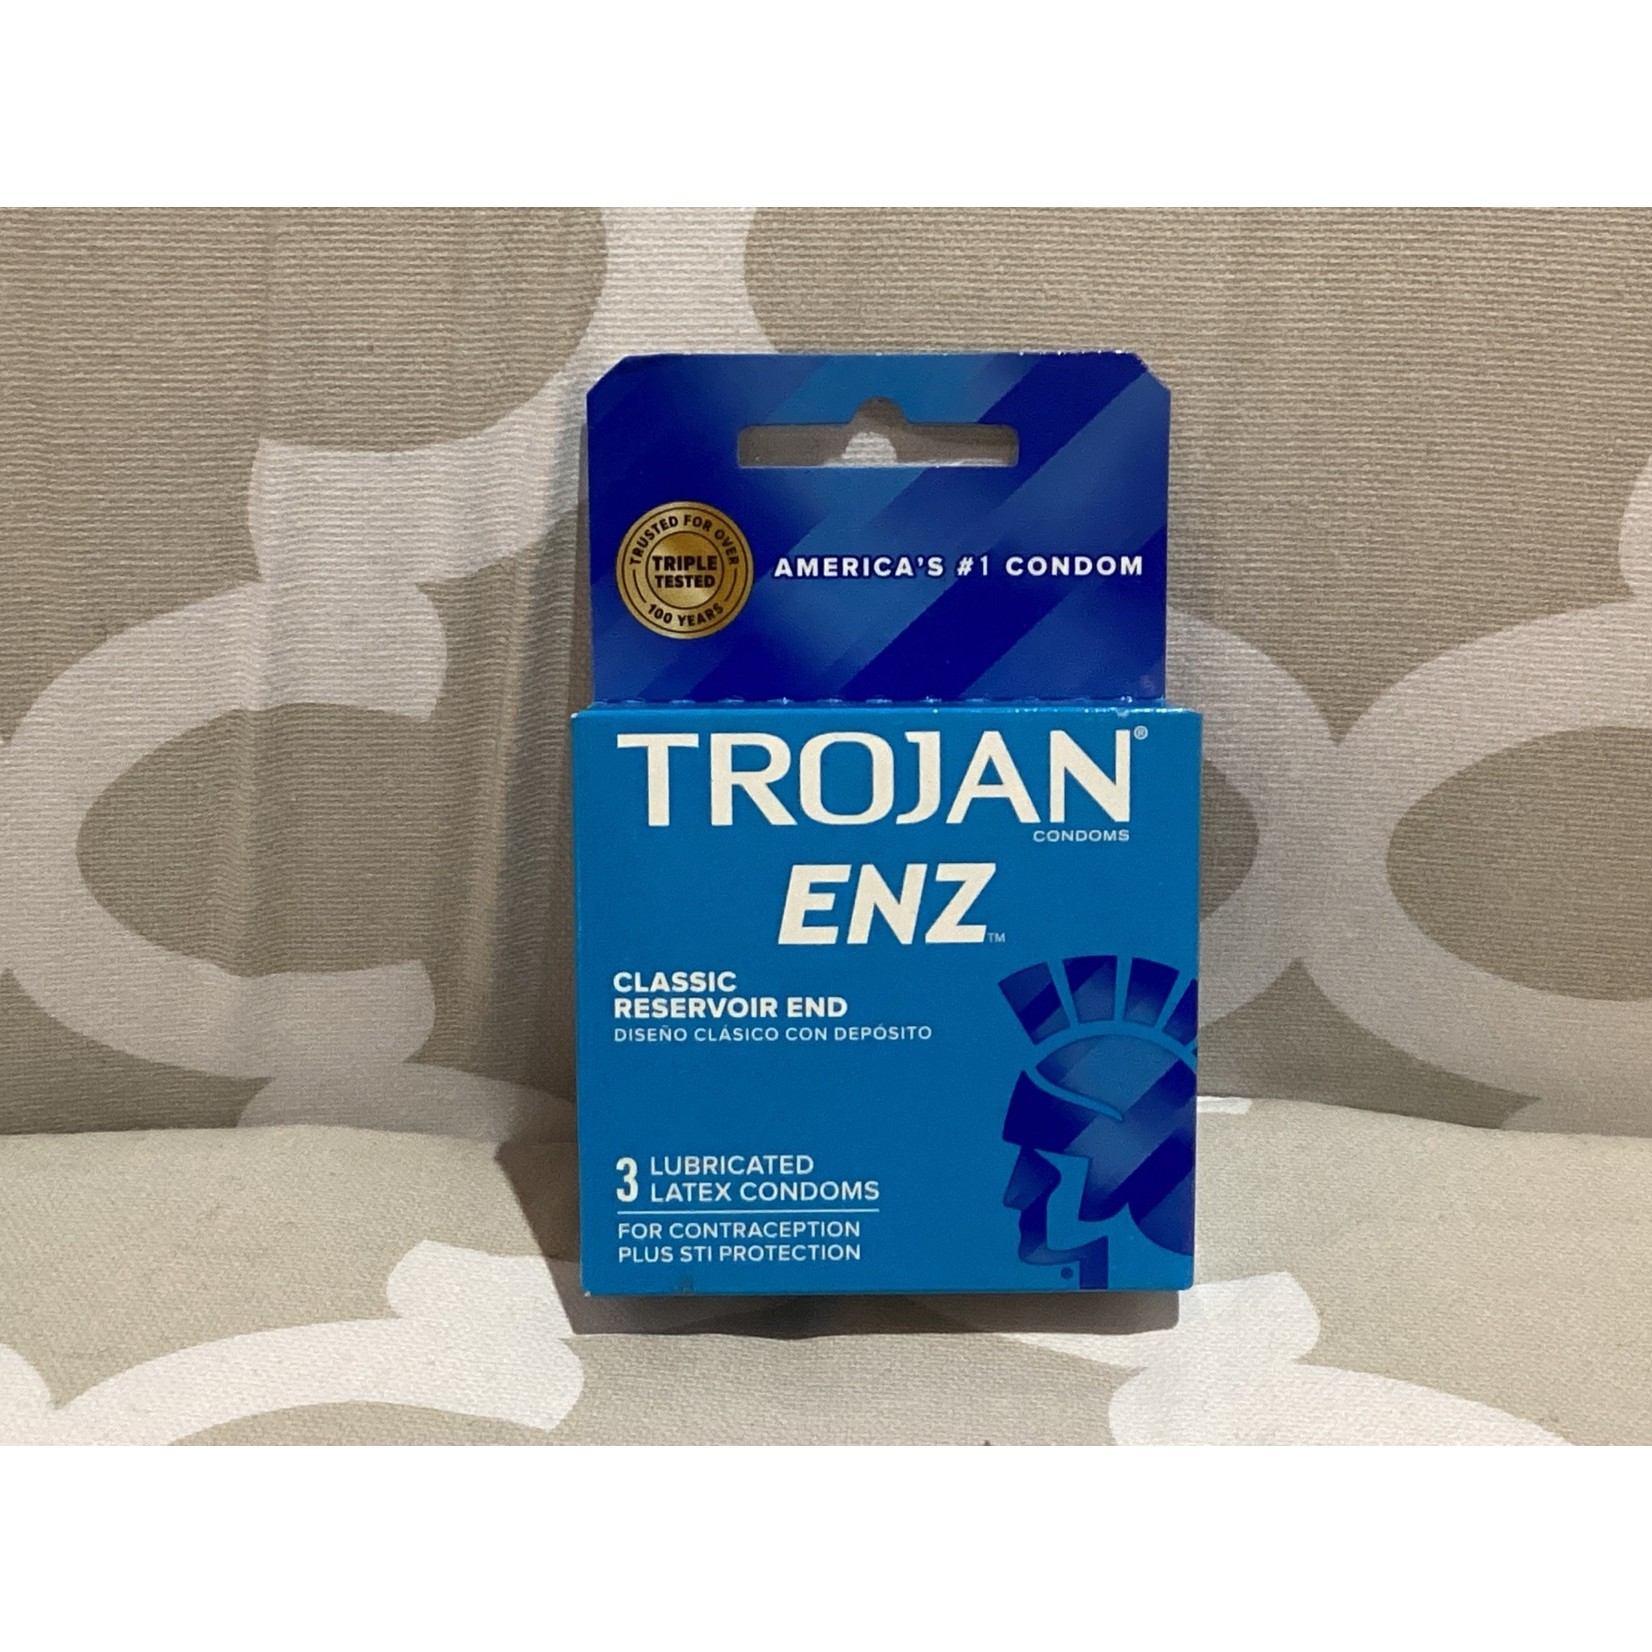 Trojan Trojan condoms 3 pack